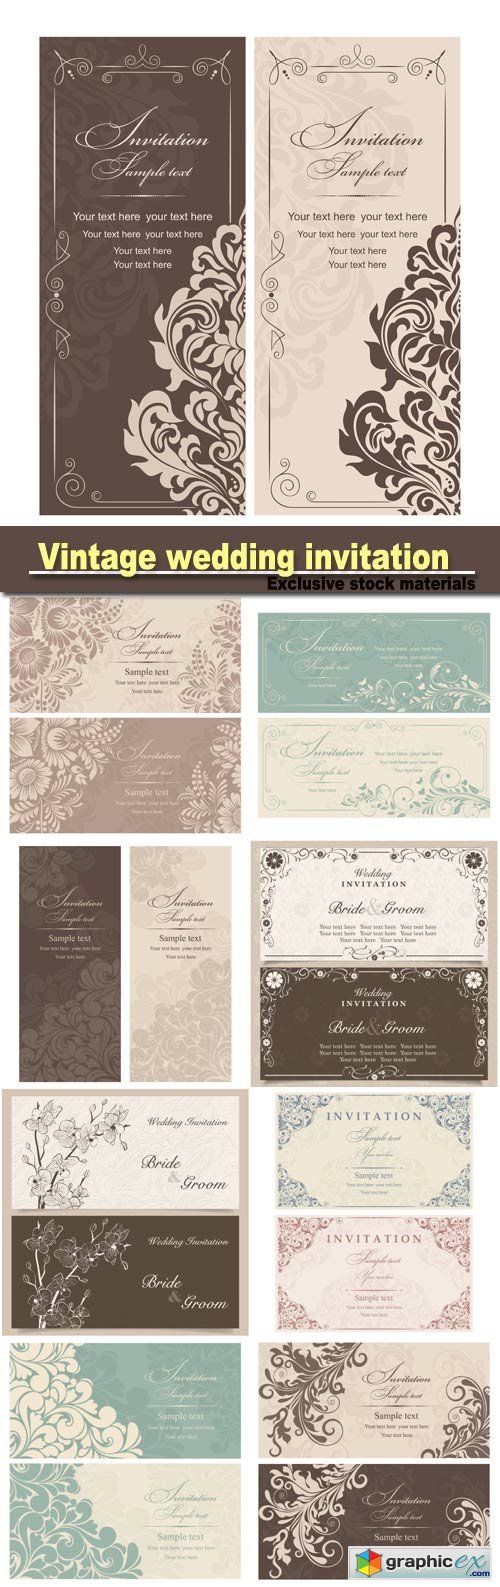 Vintage wedding invitation with floral design, vector illustration